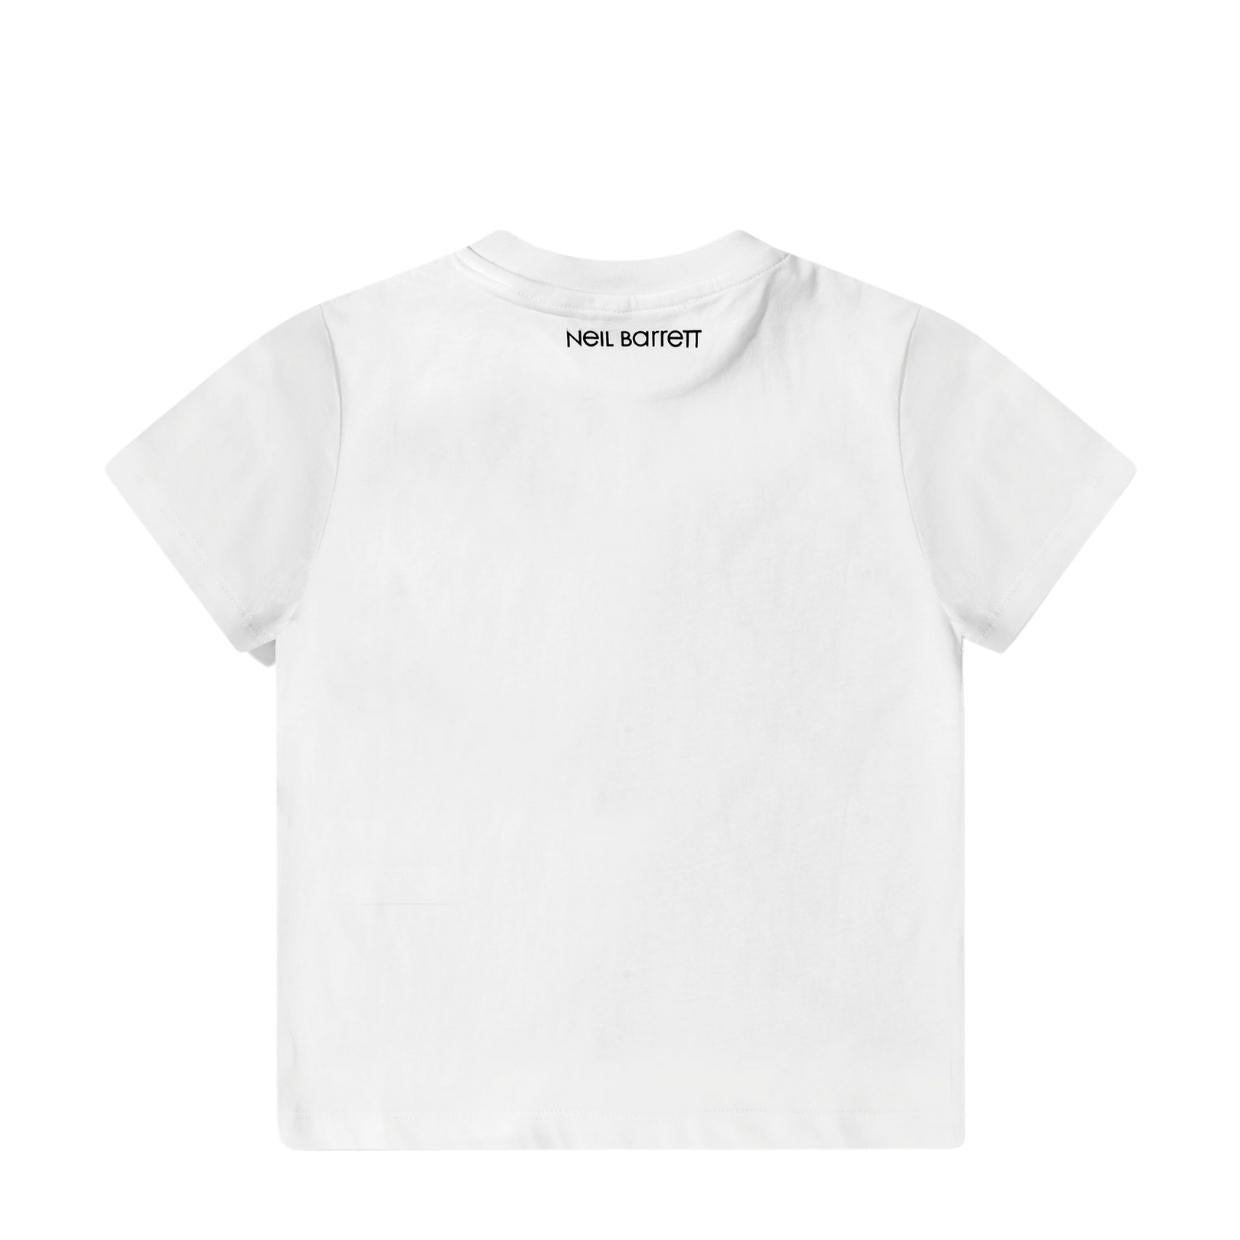 Neil Barrett Kids White Print Graphic Logo T-Shirt